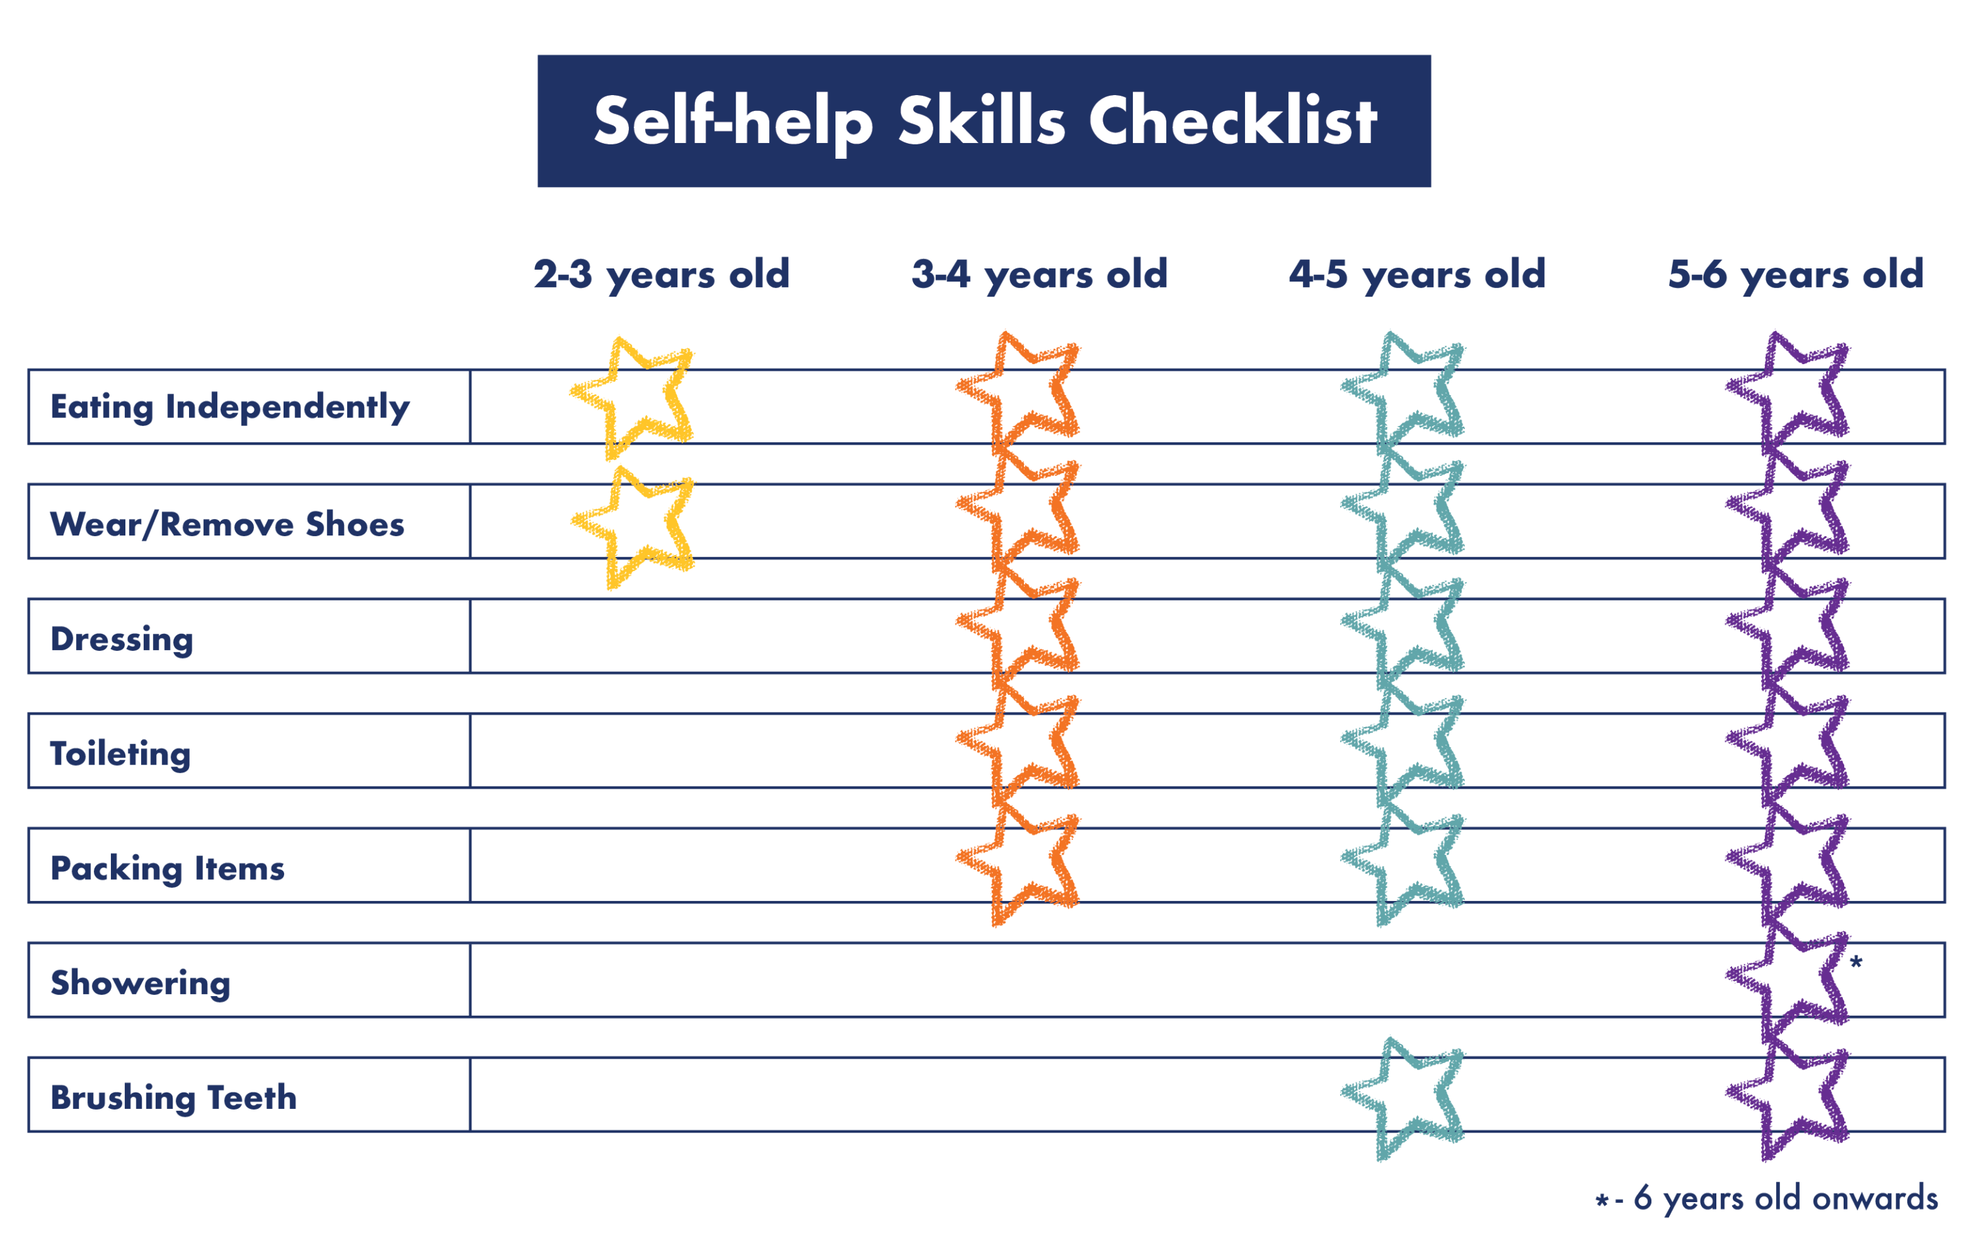 Self-help Skills Checklist by Age